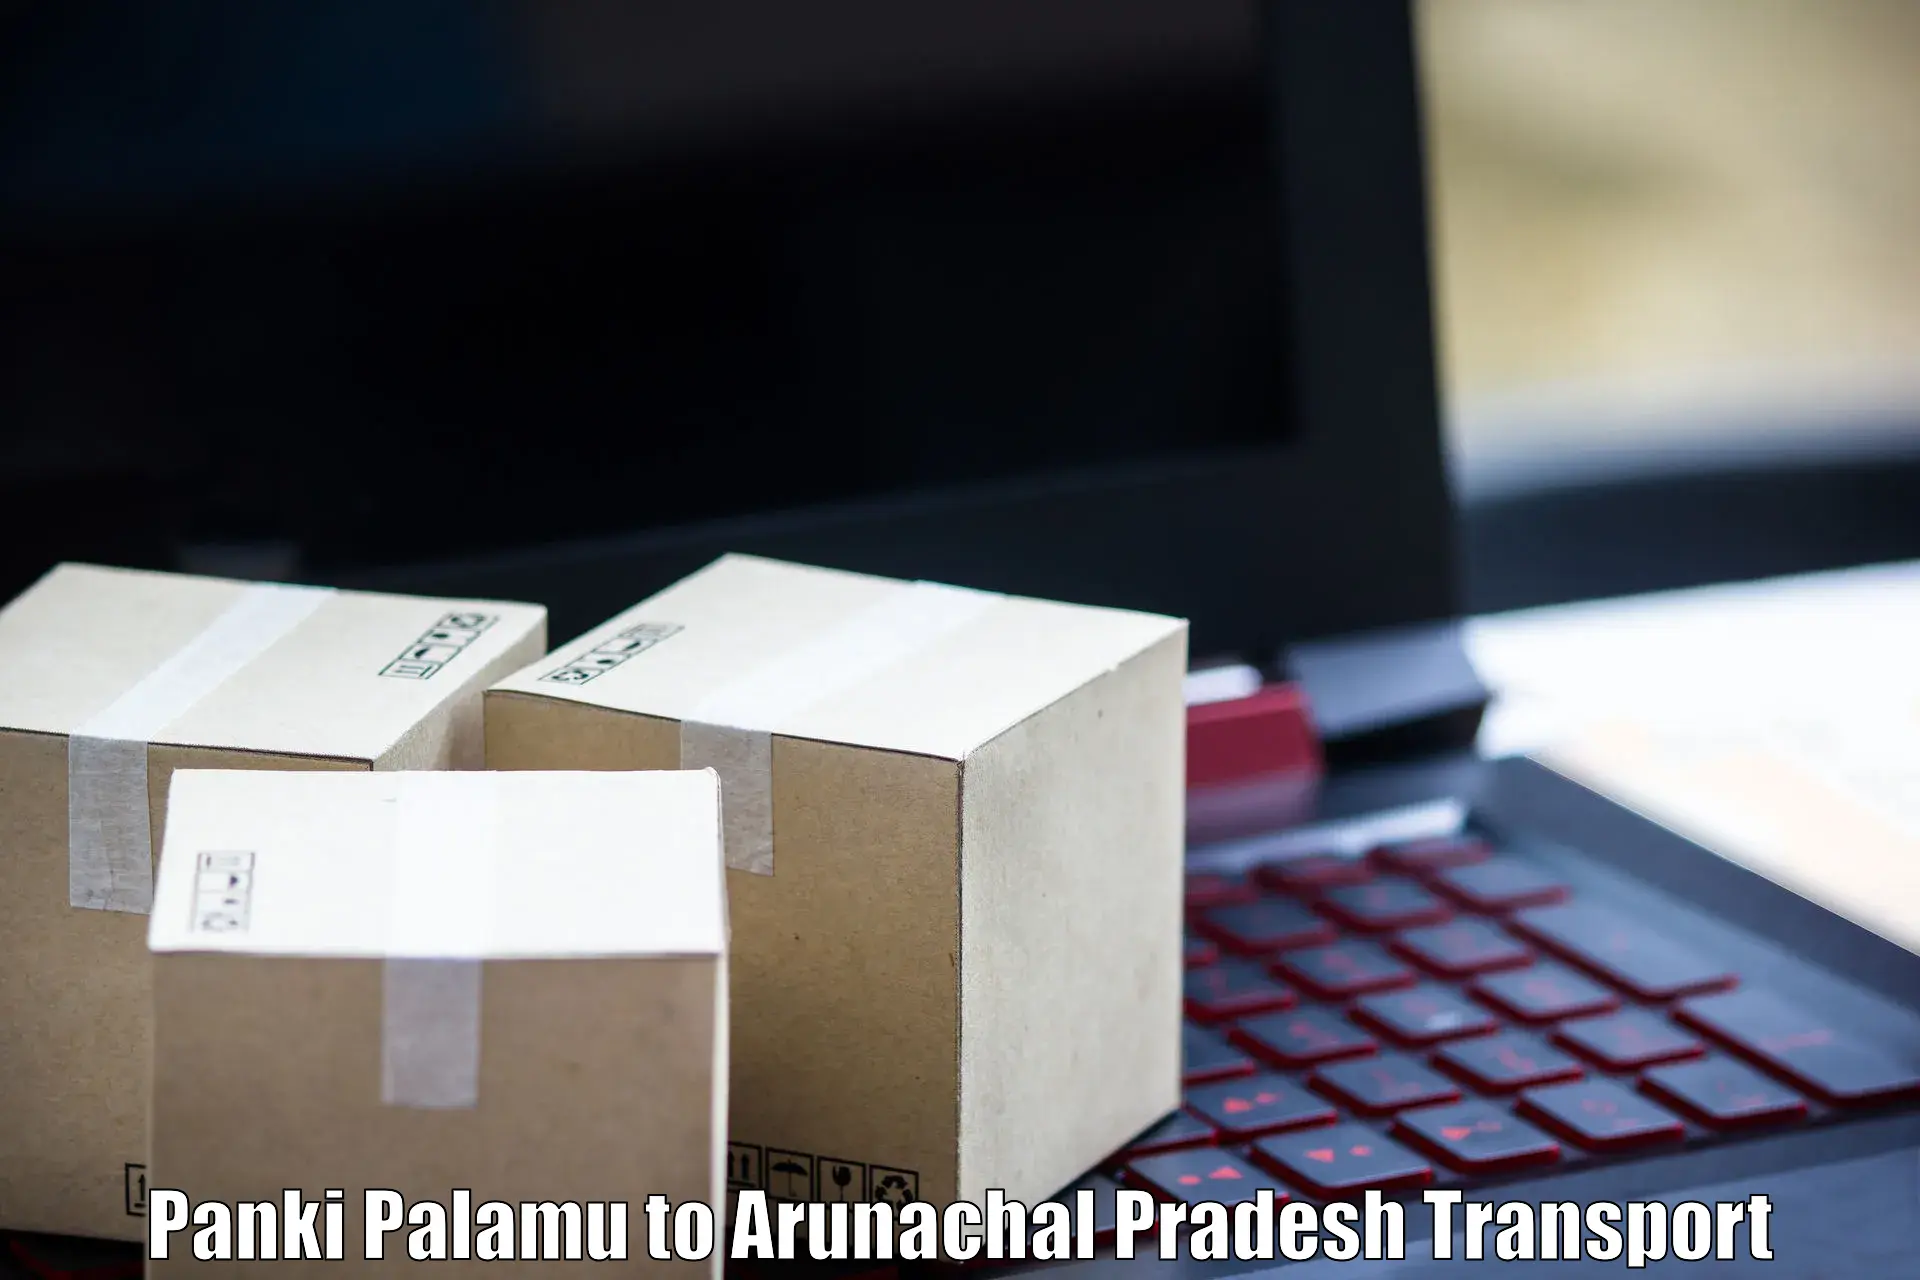 Goods transport services Panki Palamu to Arunachal Pradesh